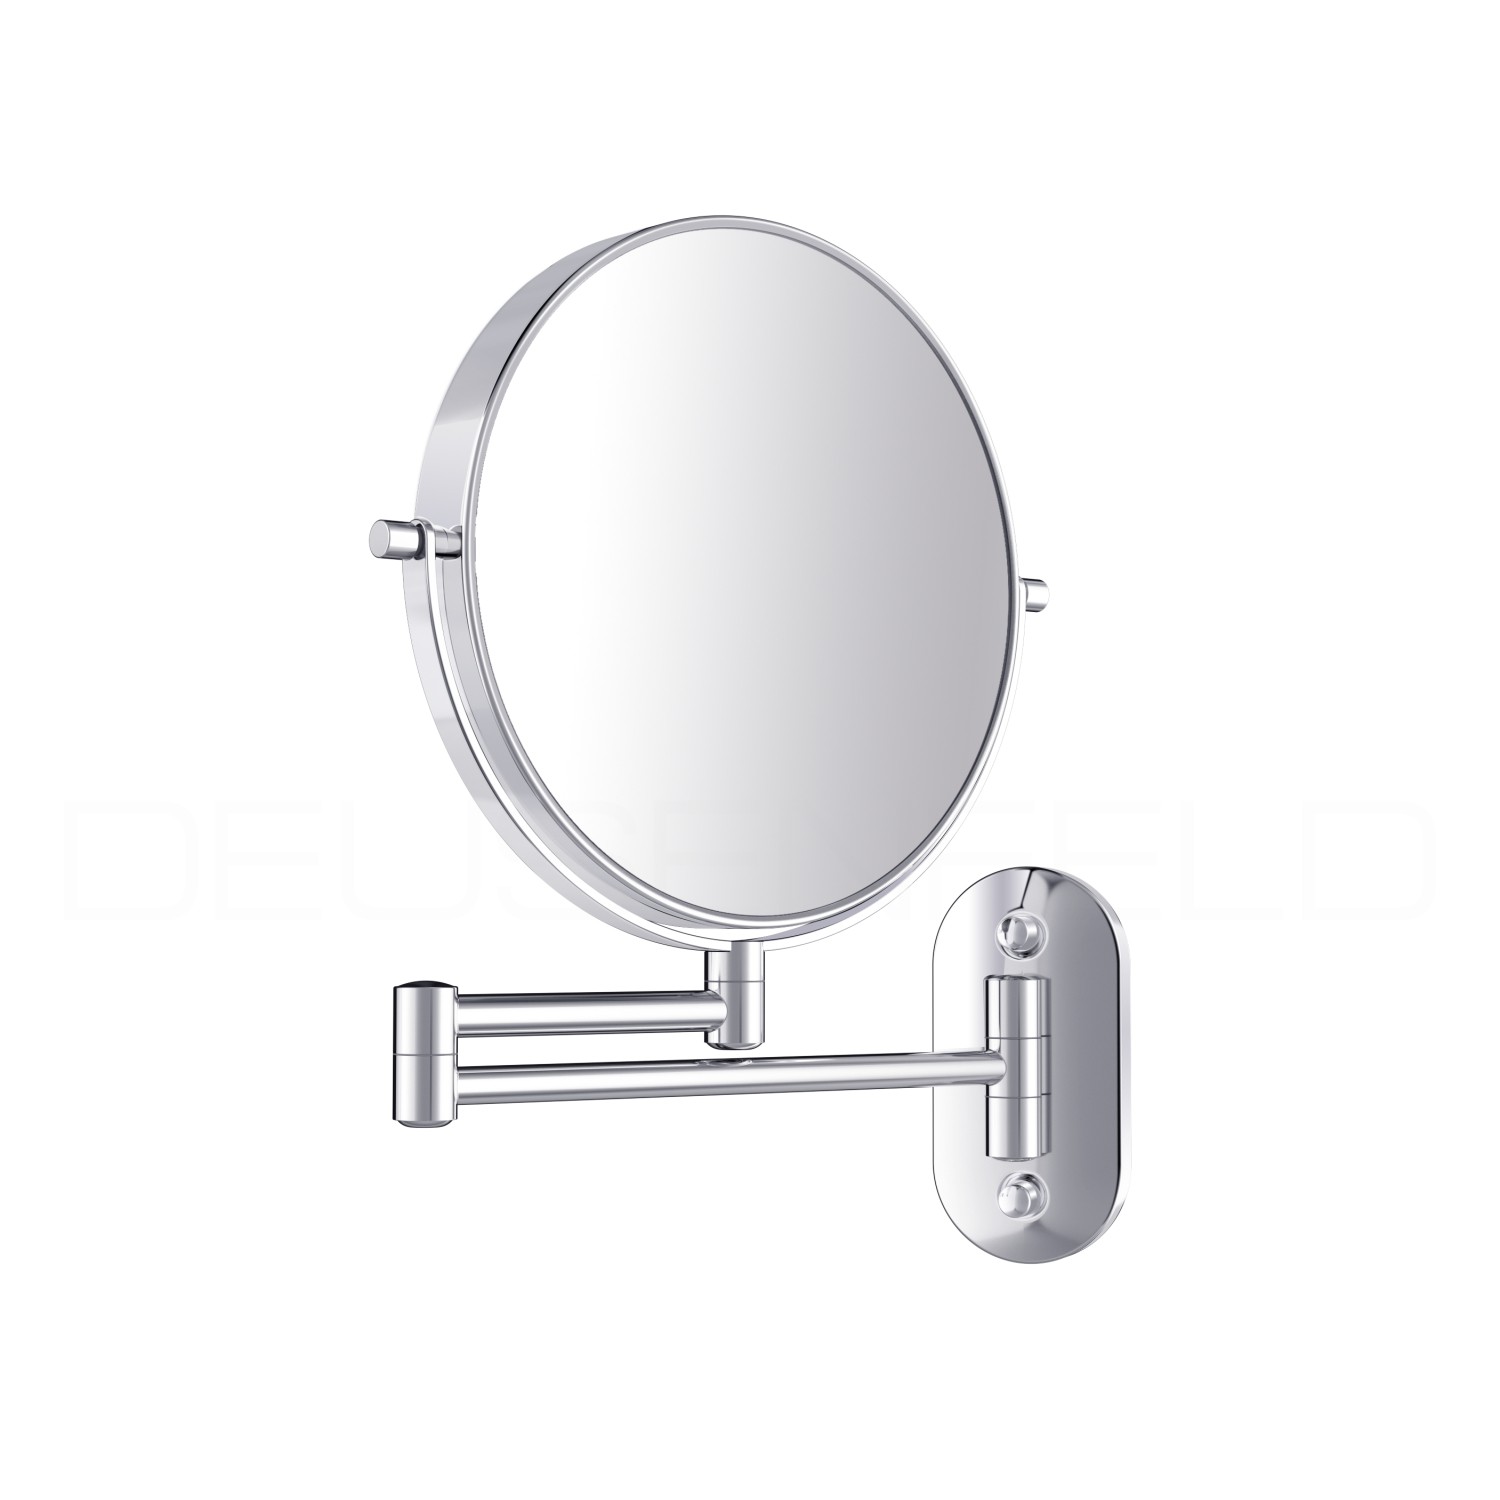 Kosmetikspiegel online kaufen  MAEDJE KG - DEUSENFELD KM10C - Magnet  Kosmetikspiegel mit 2 selbstklebenden Wandplatten, Klebespiegel, magnetisch  abnehmbar, Ø15cm, 10x Vergrößerung, hochglanz verchromt